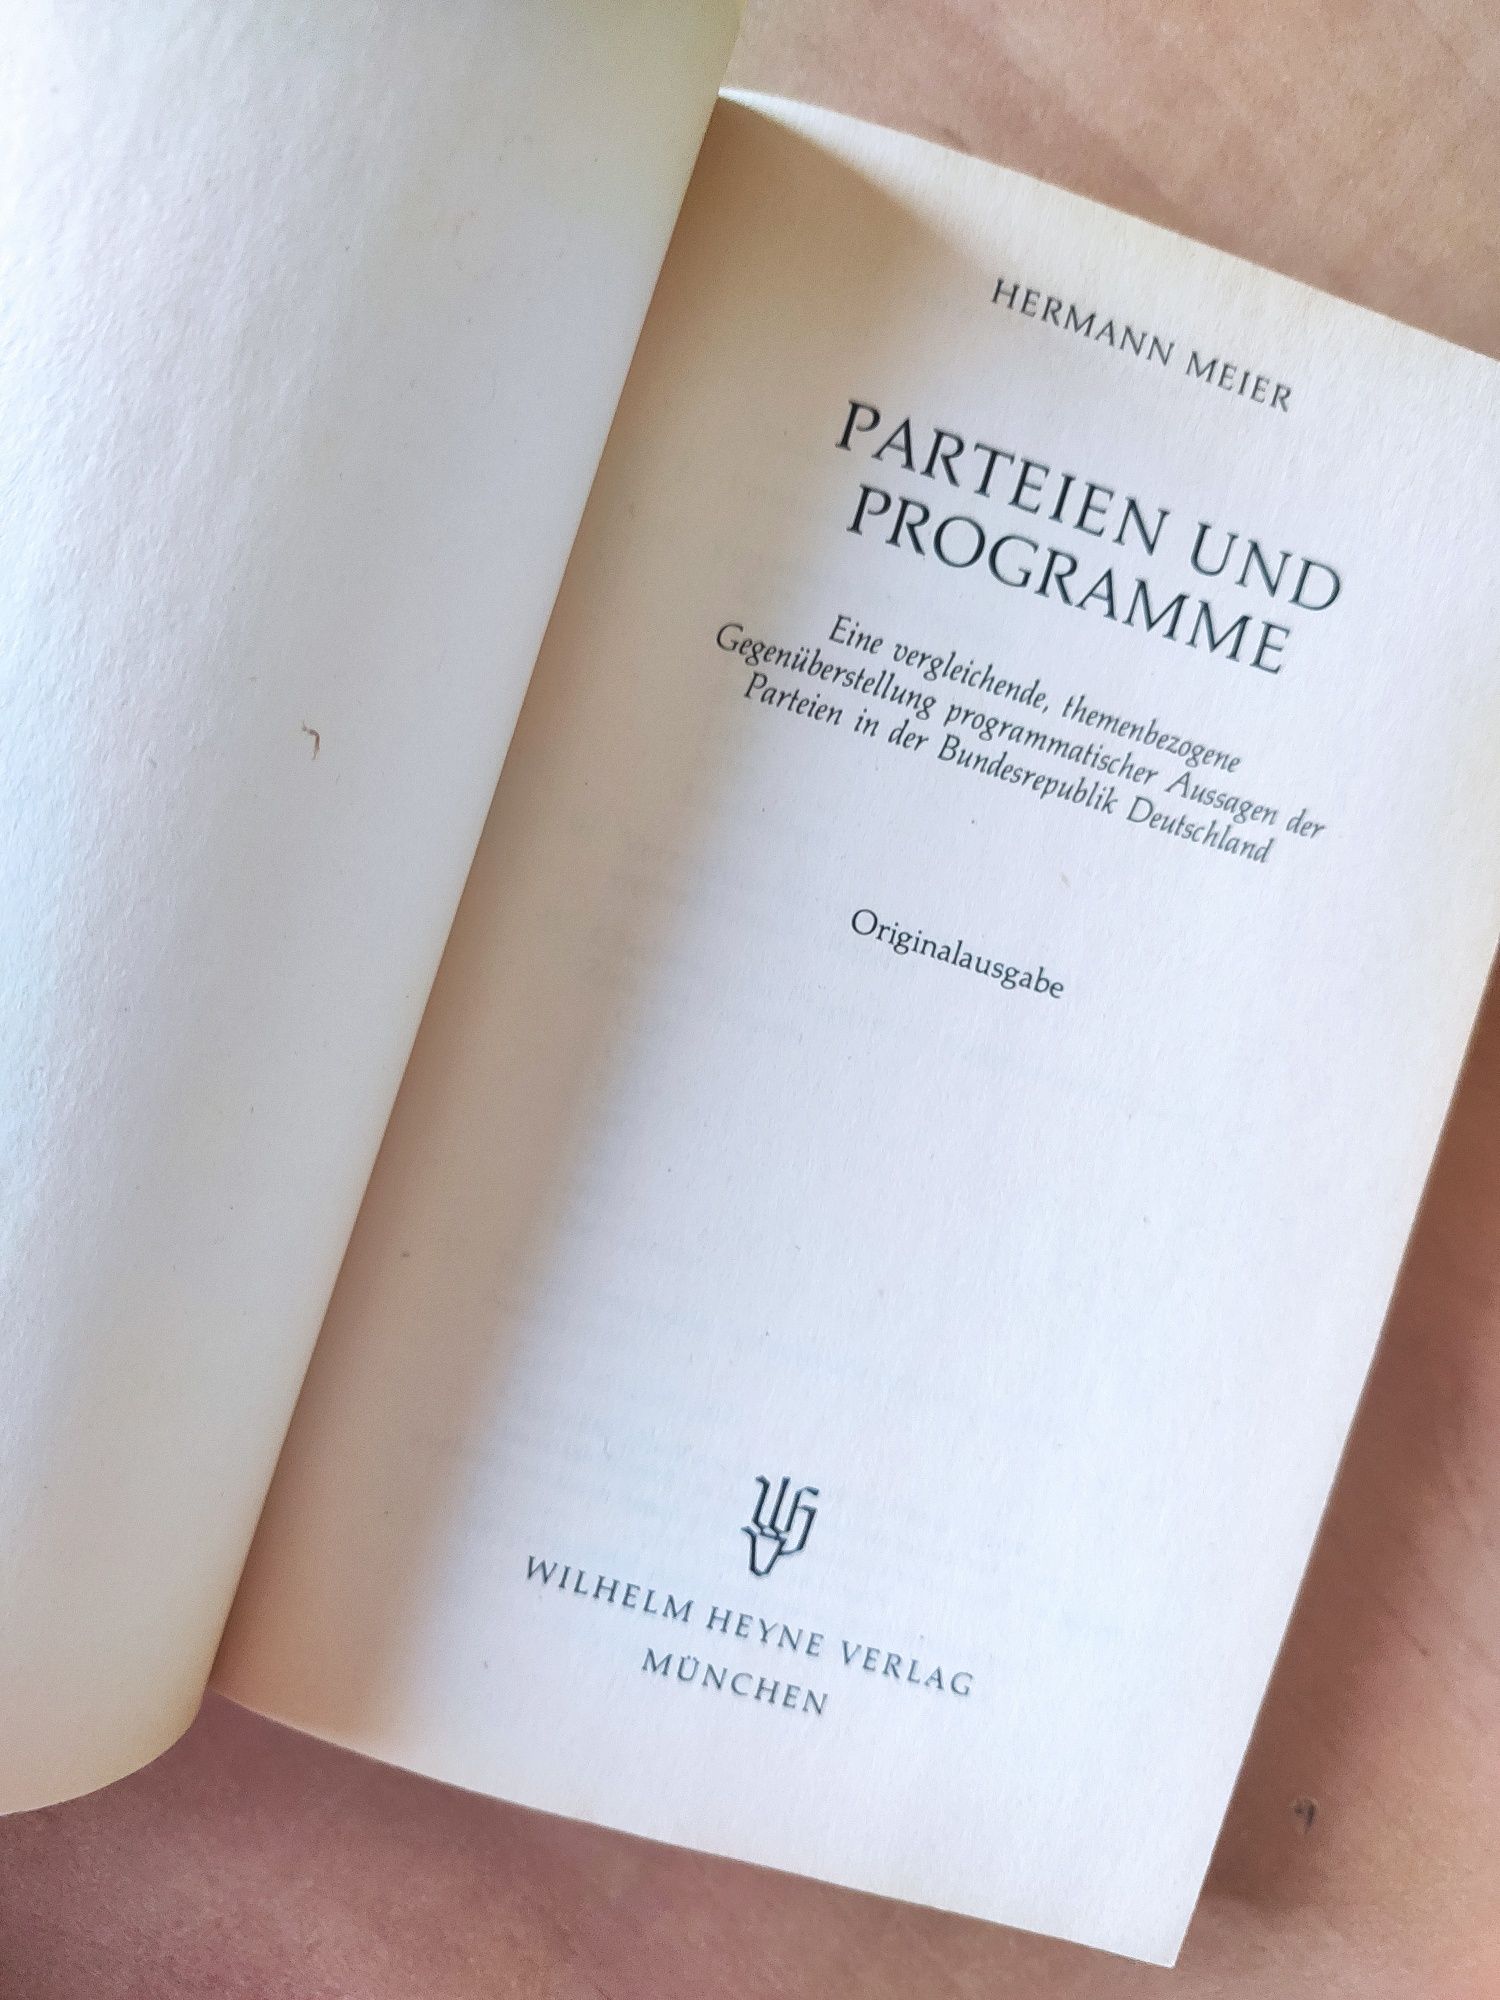 Książka "Parteien und Programme" z 1980 r w j. niemieckim